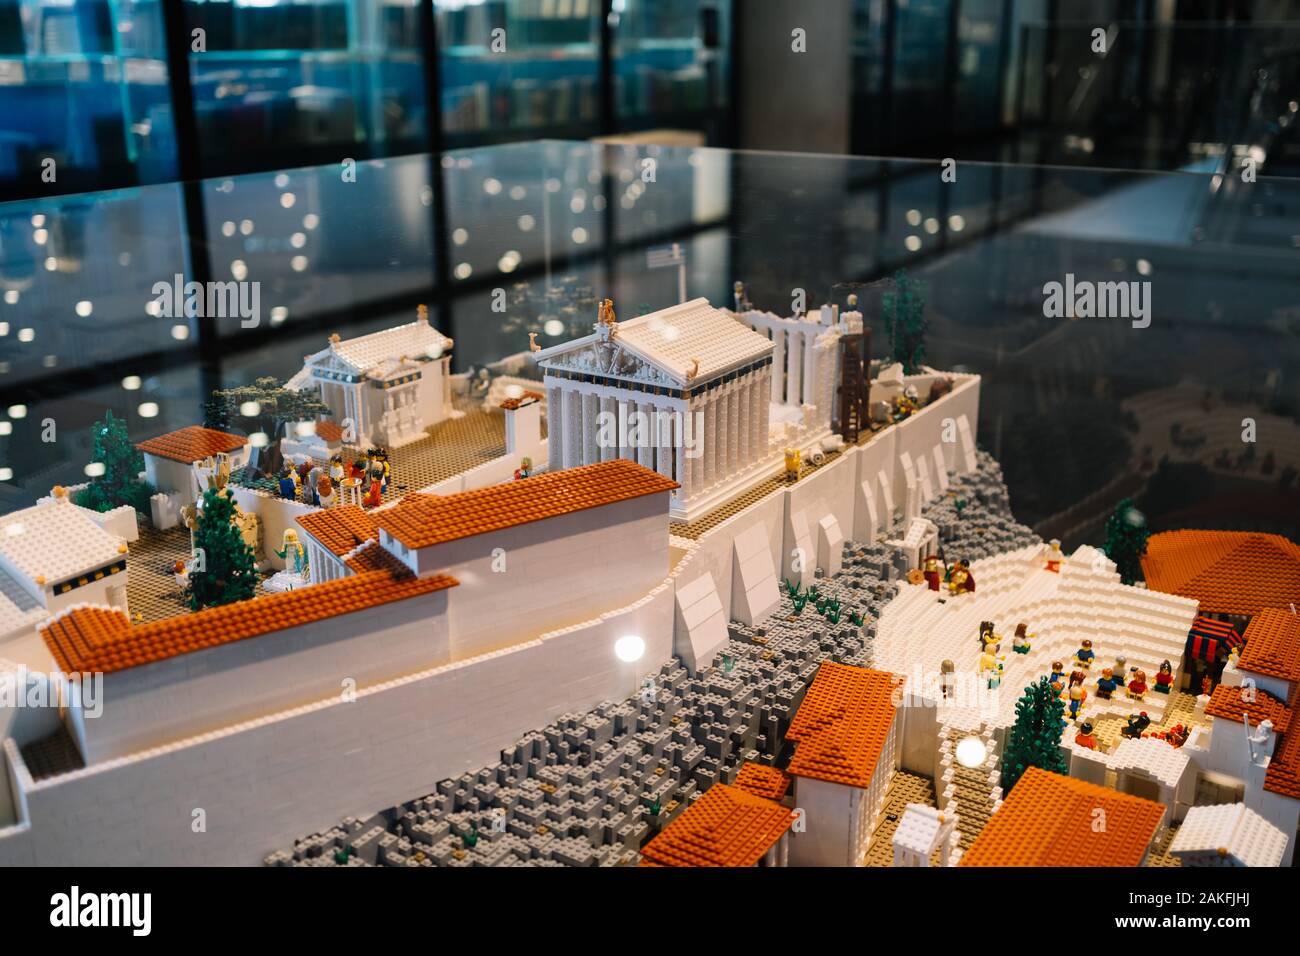 Athen, Griechenland - Dec 22, 2019: Lego Miniatur der Akropolis, Ausstellung im Akropolis-Museum in Athen, Griechenland, Europa Stockfoto